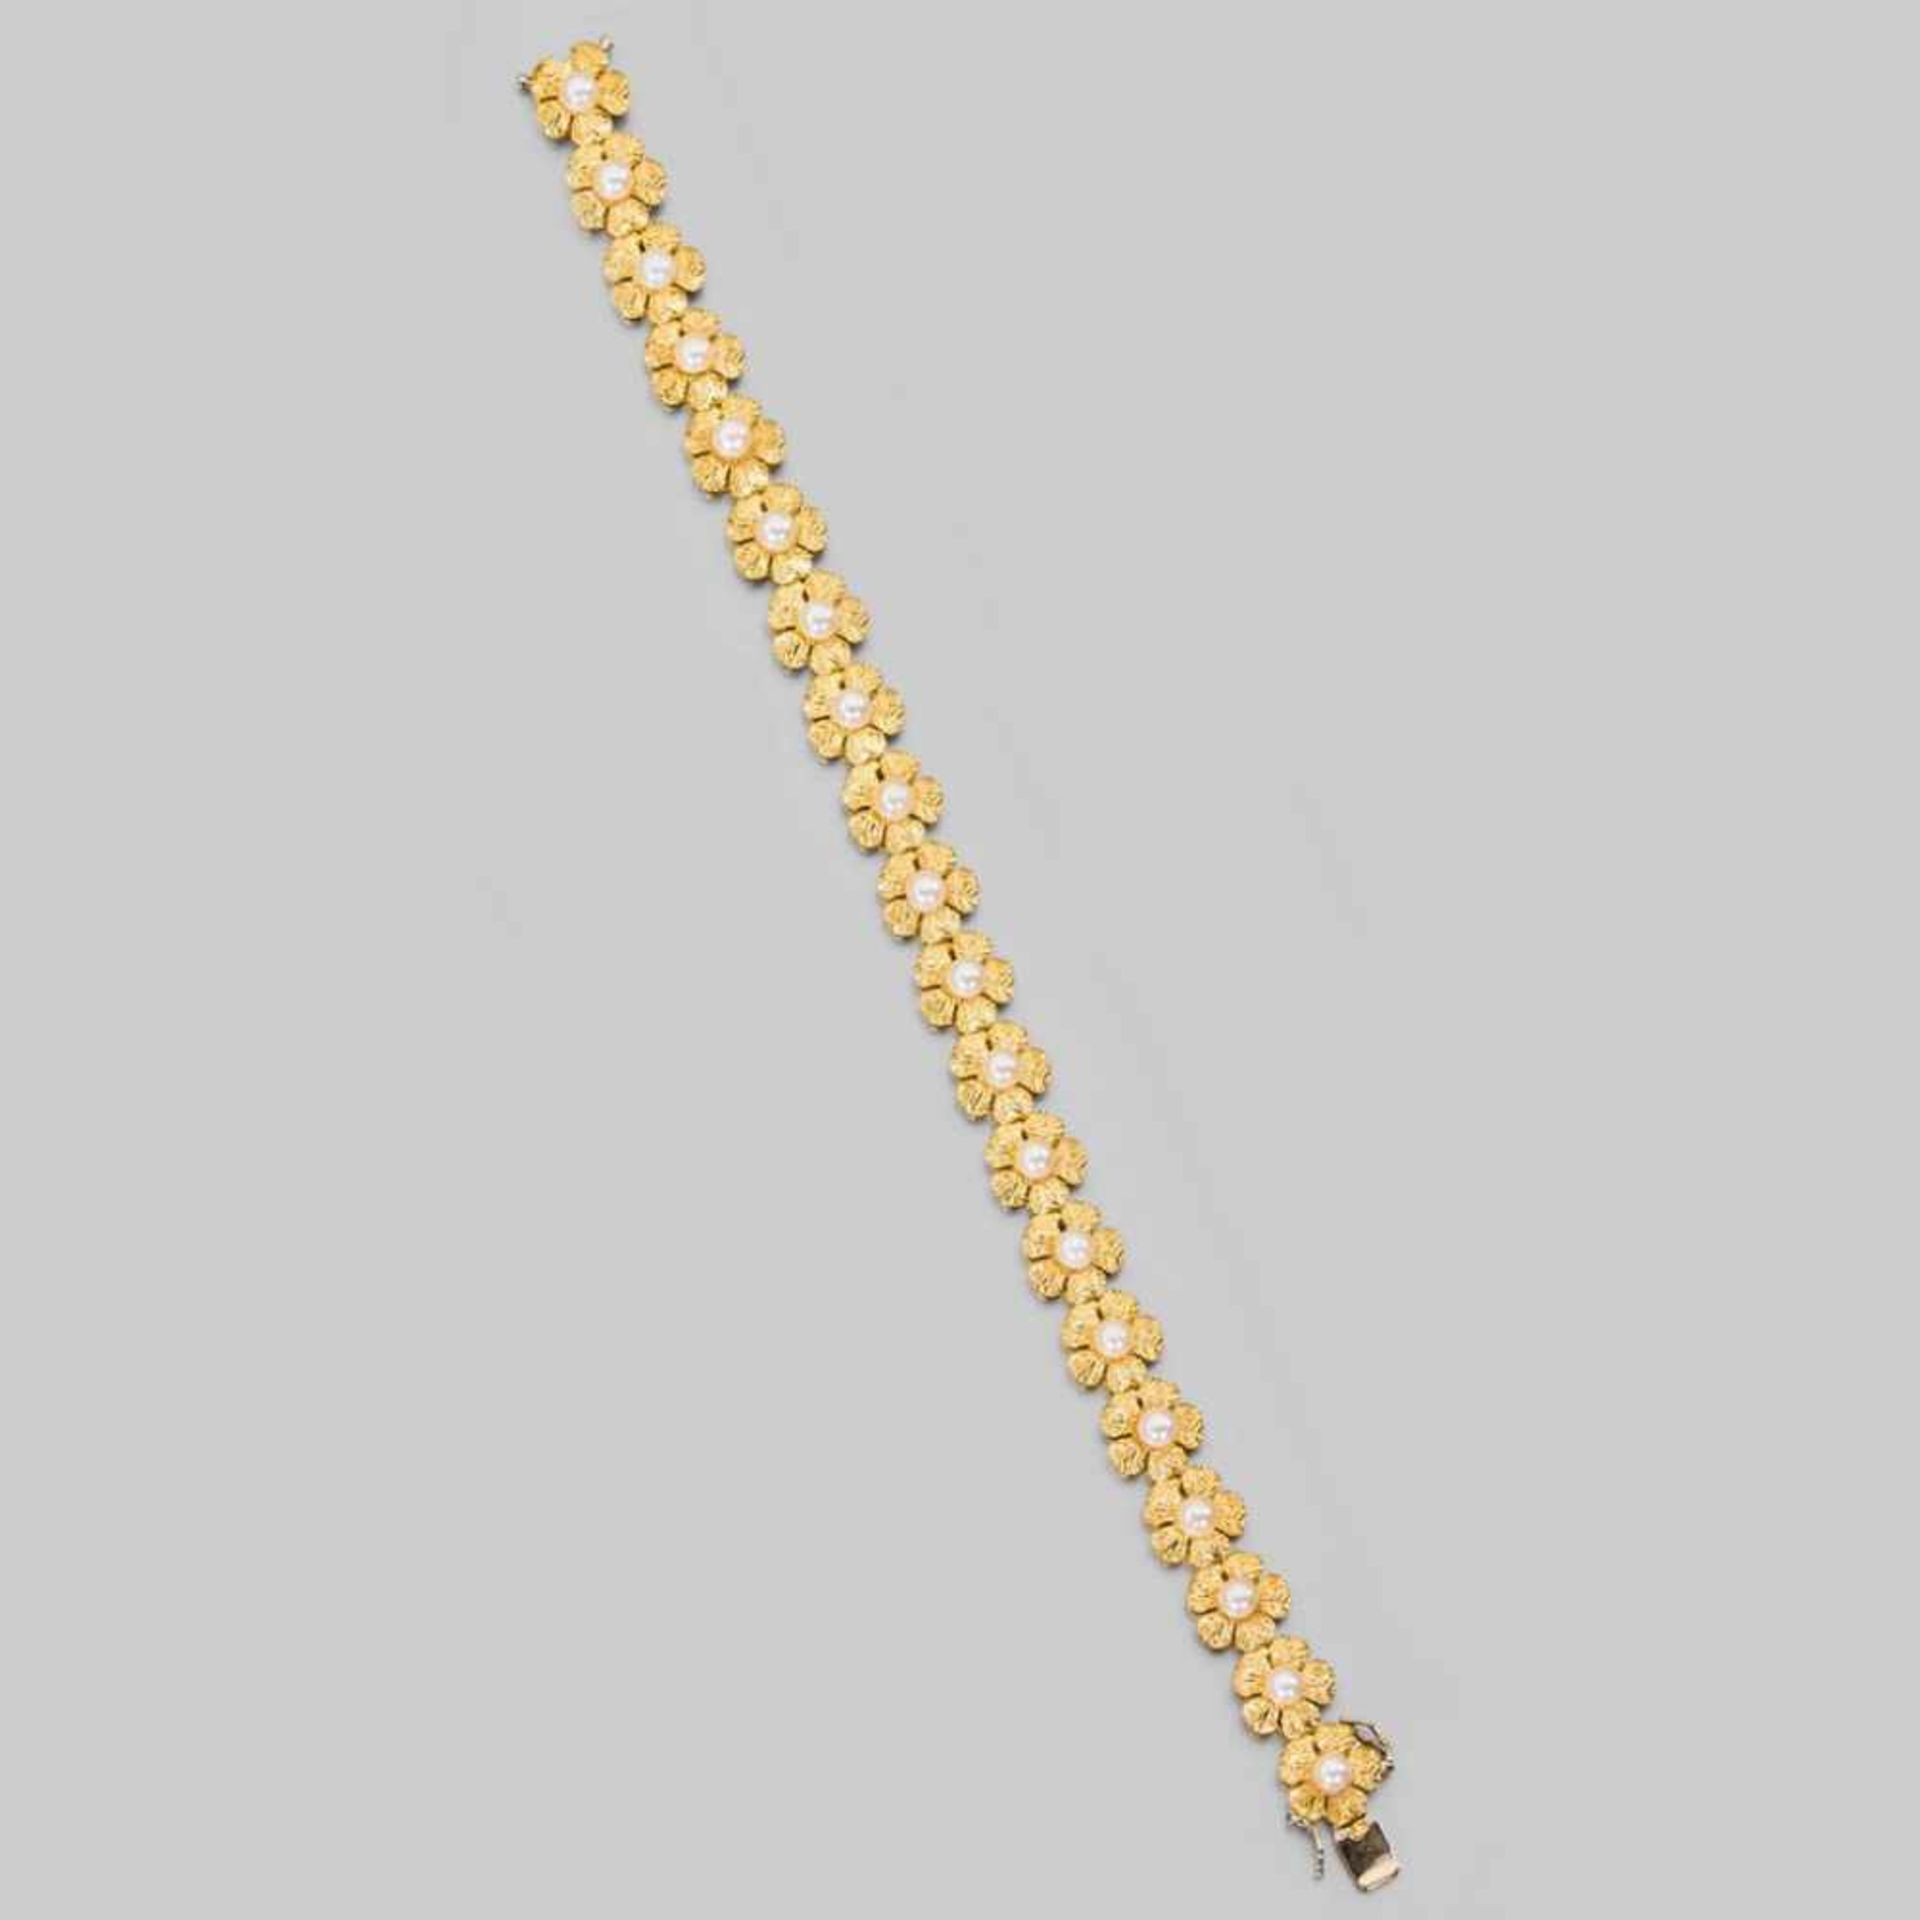 Gold-/Perlarmband mit feinen Gliedern in Blütenform. 18 ct. GG, 17,6 g. L 17,5 cm